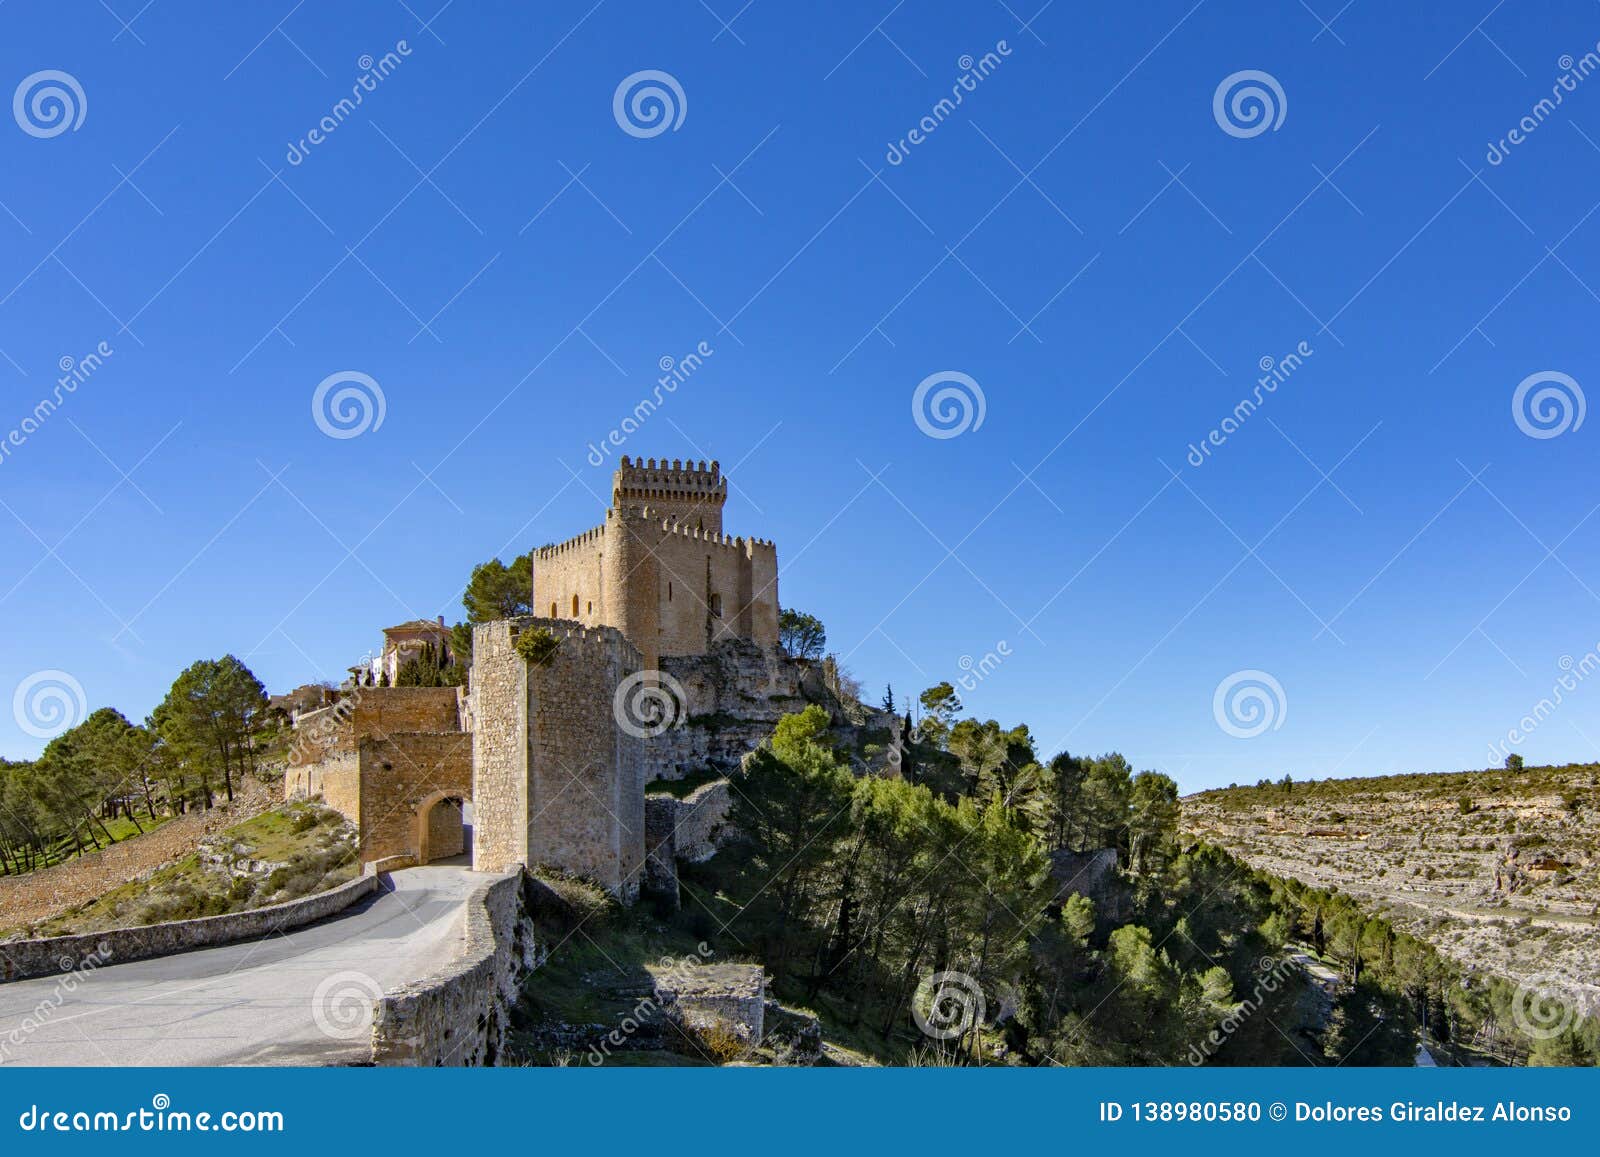 castle of alarcon in cuenca, spain